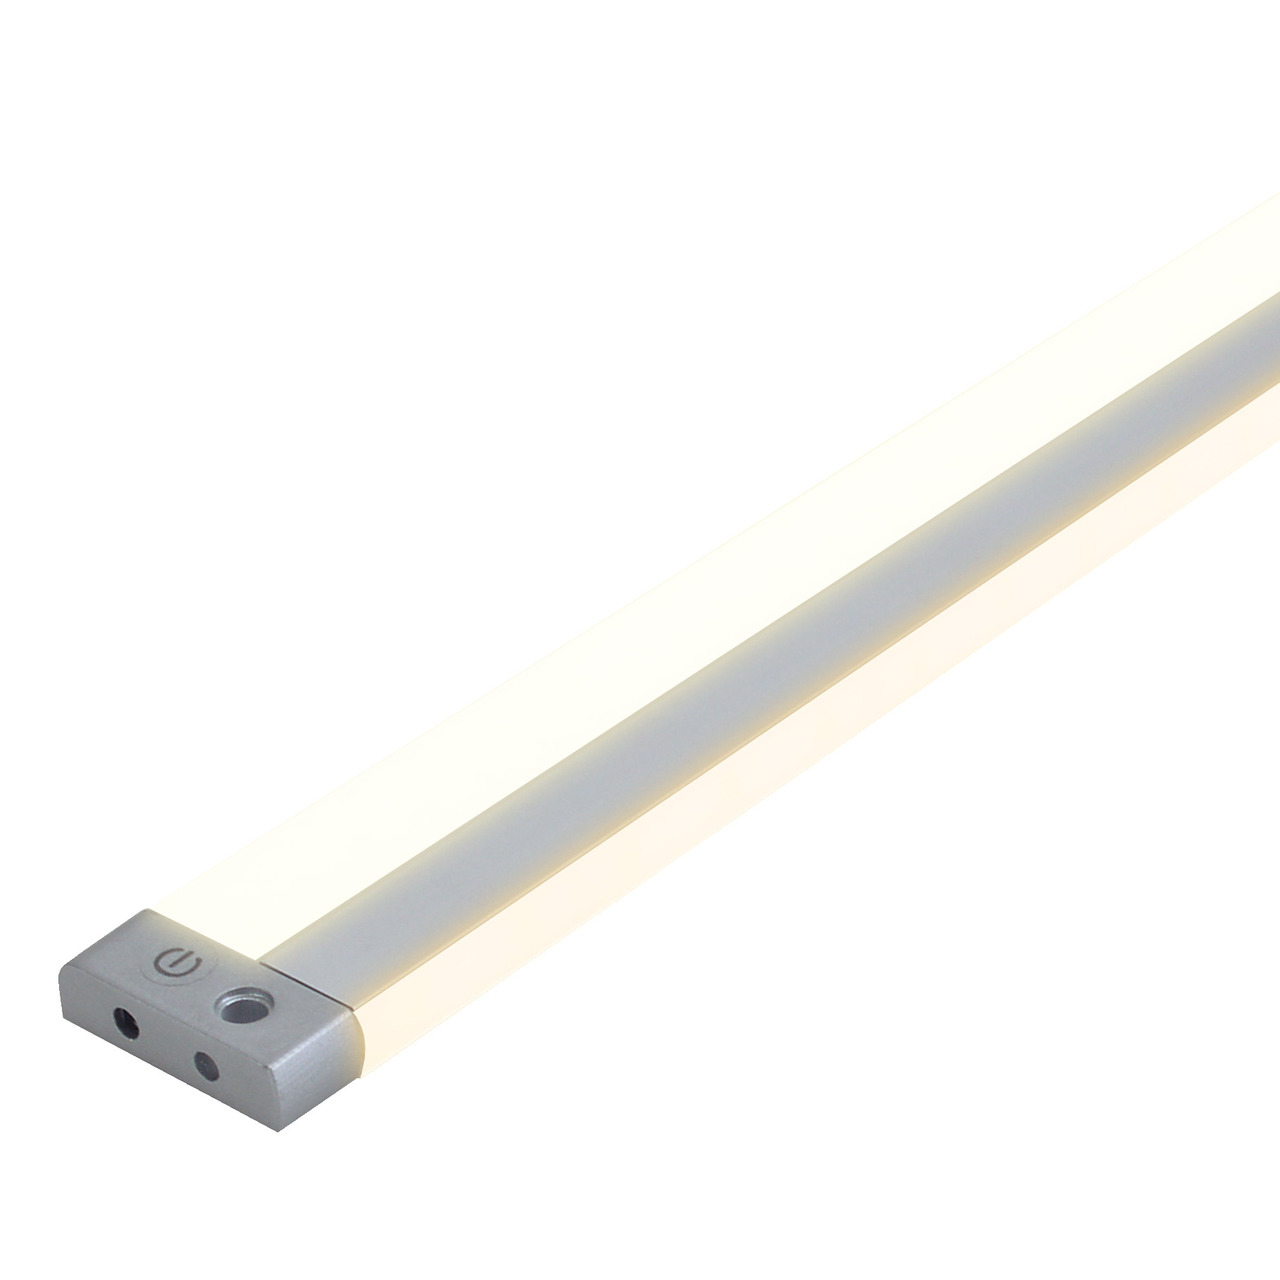 Mller Licht 11-W-LED-Unterbauleuchte mit indirektem Licht- Olus Sensor 80- dimmbar- 80 cm unter Beleuchtung